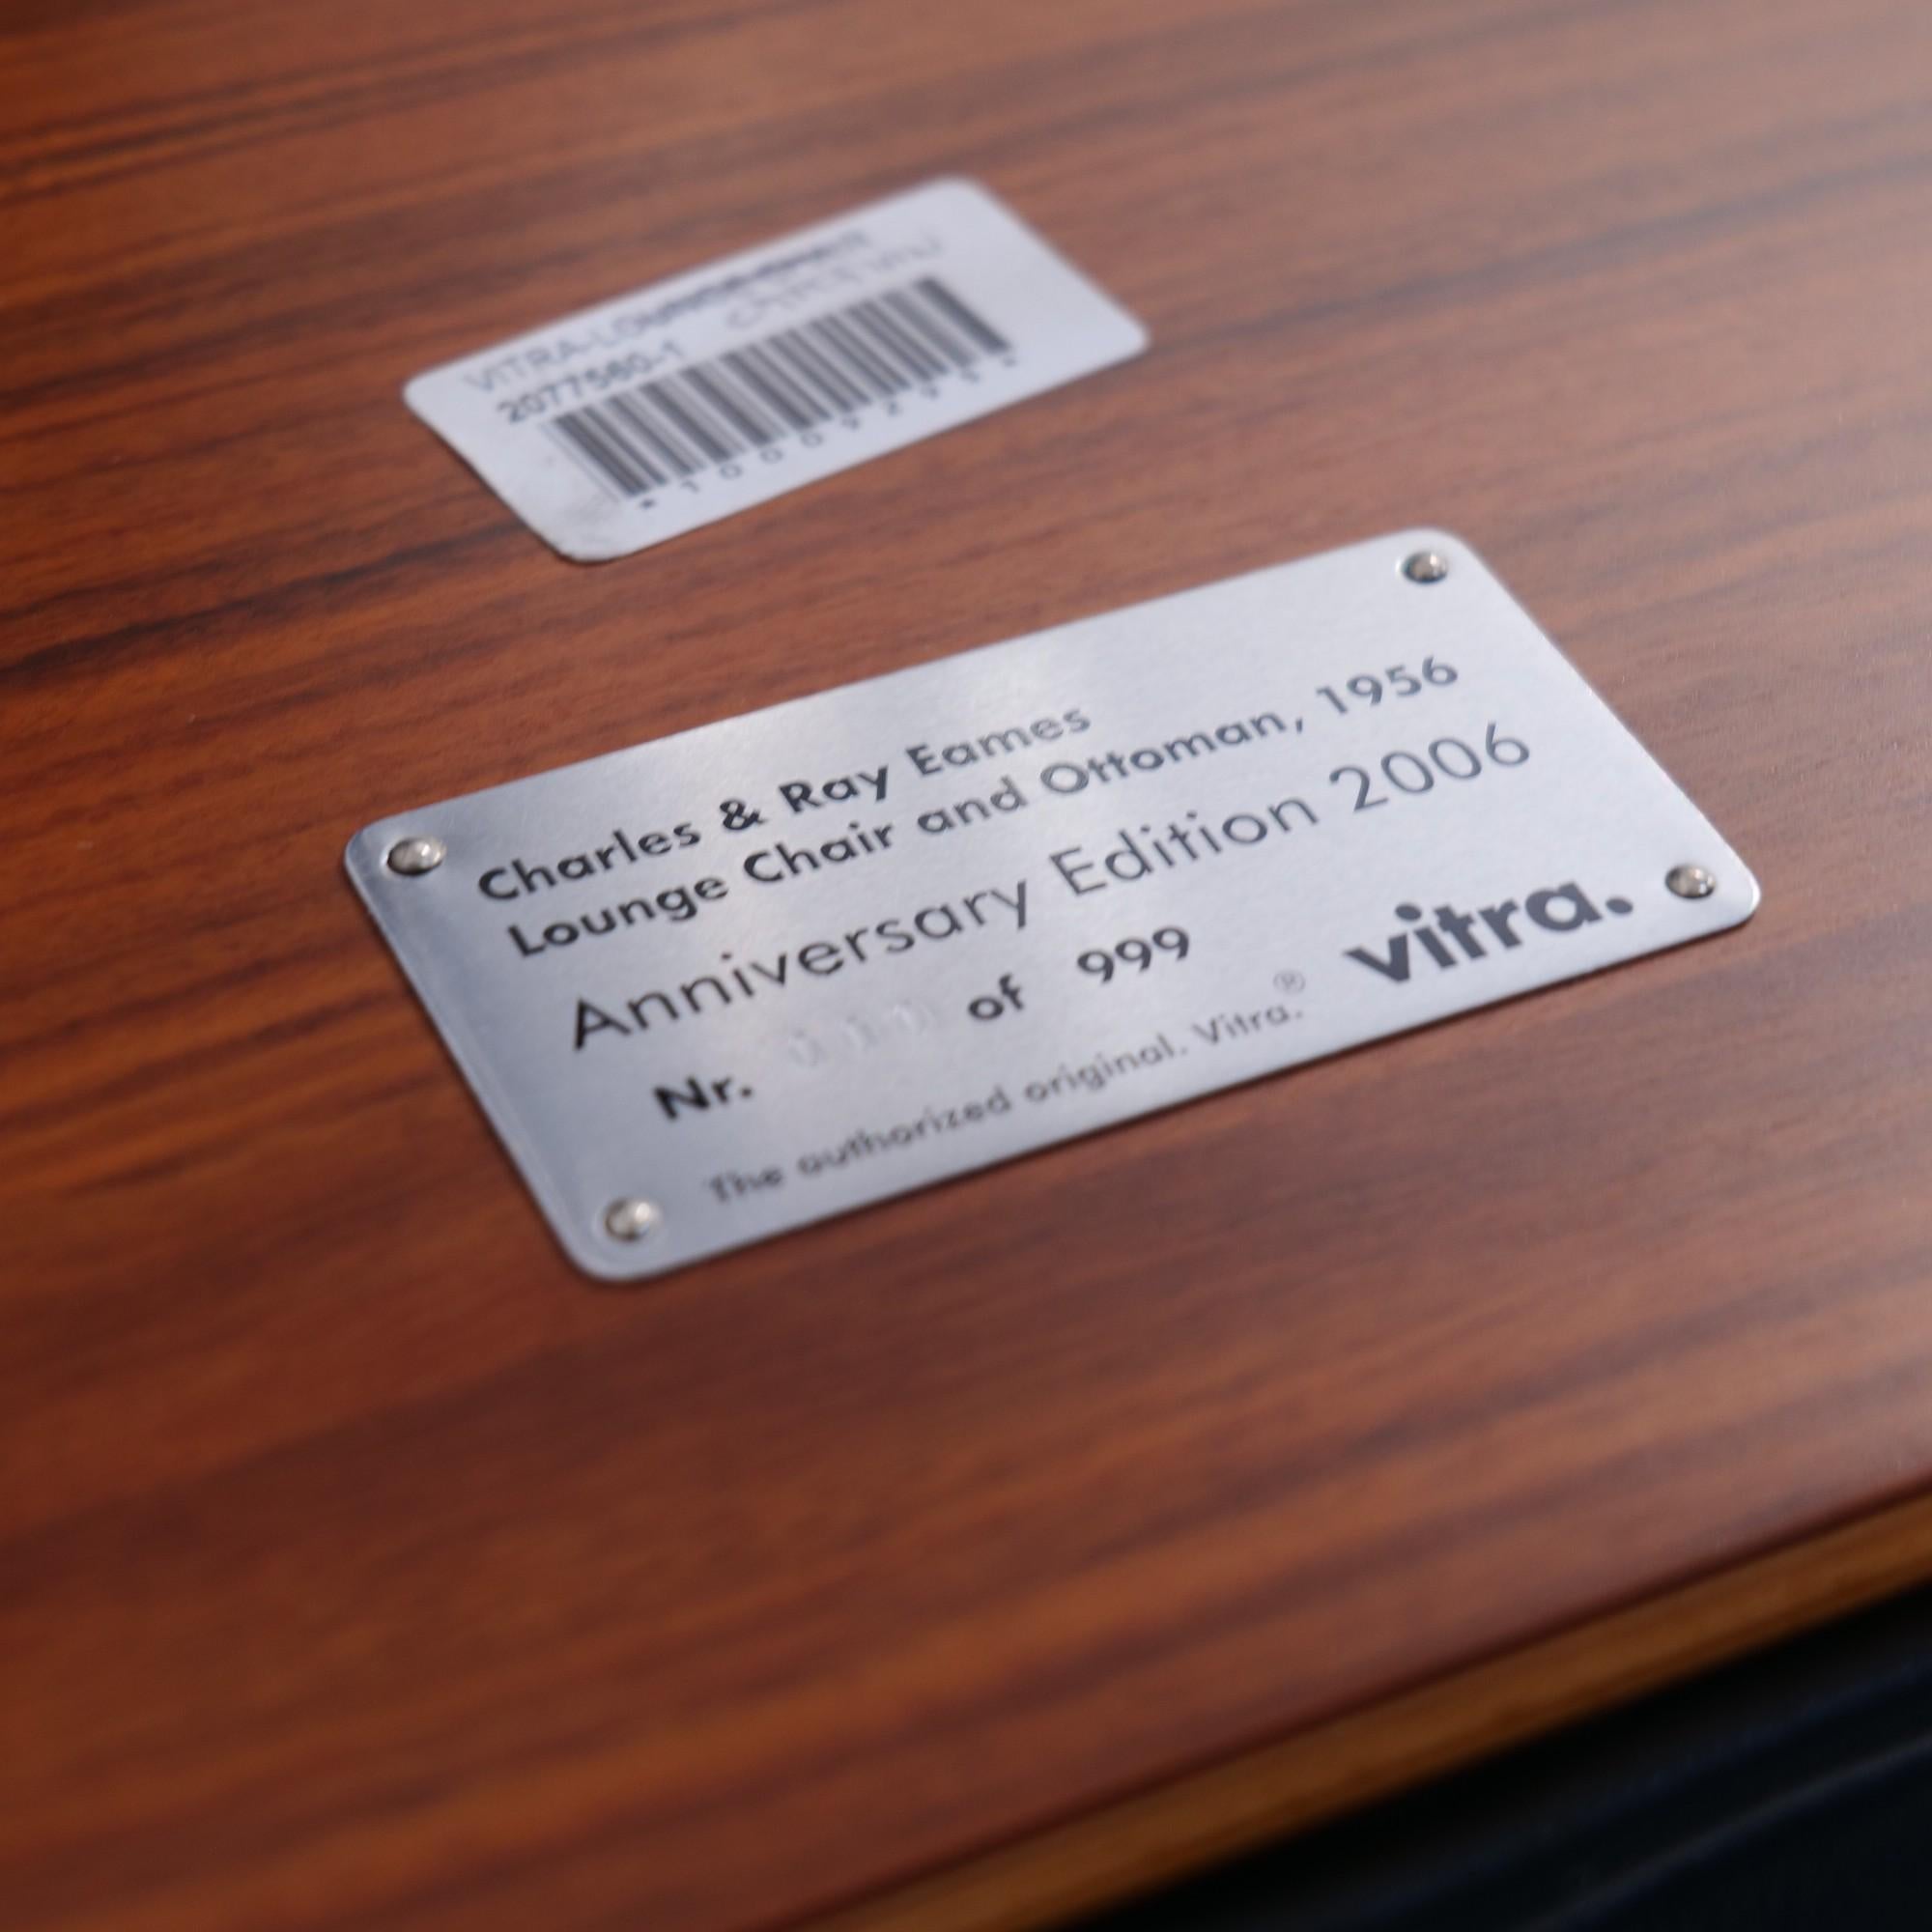 Vous avez la possibilité d'acheter une nouvelle chaise longue Eames.
de l'édition du 50e anniversaire. Exemplaire unique.
Dans cette édition, les chaises ont été limitées à 999 pièces.
Pour cette série, des matériaux particulièrement nobles ont été